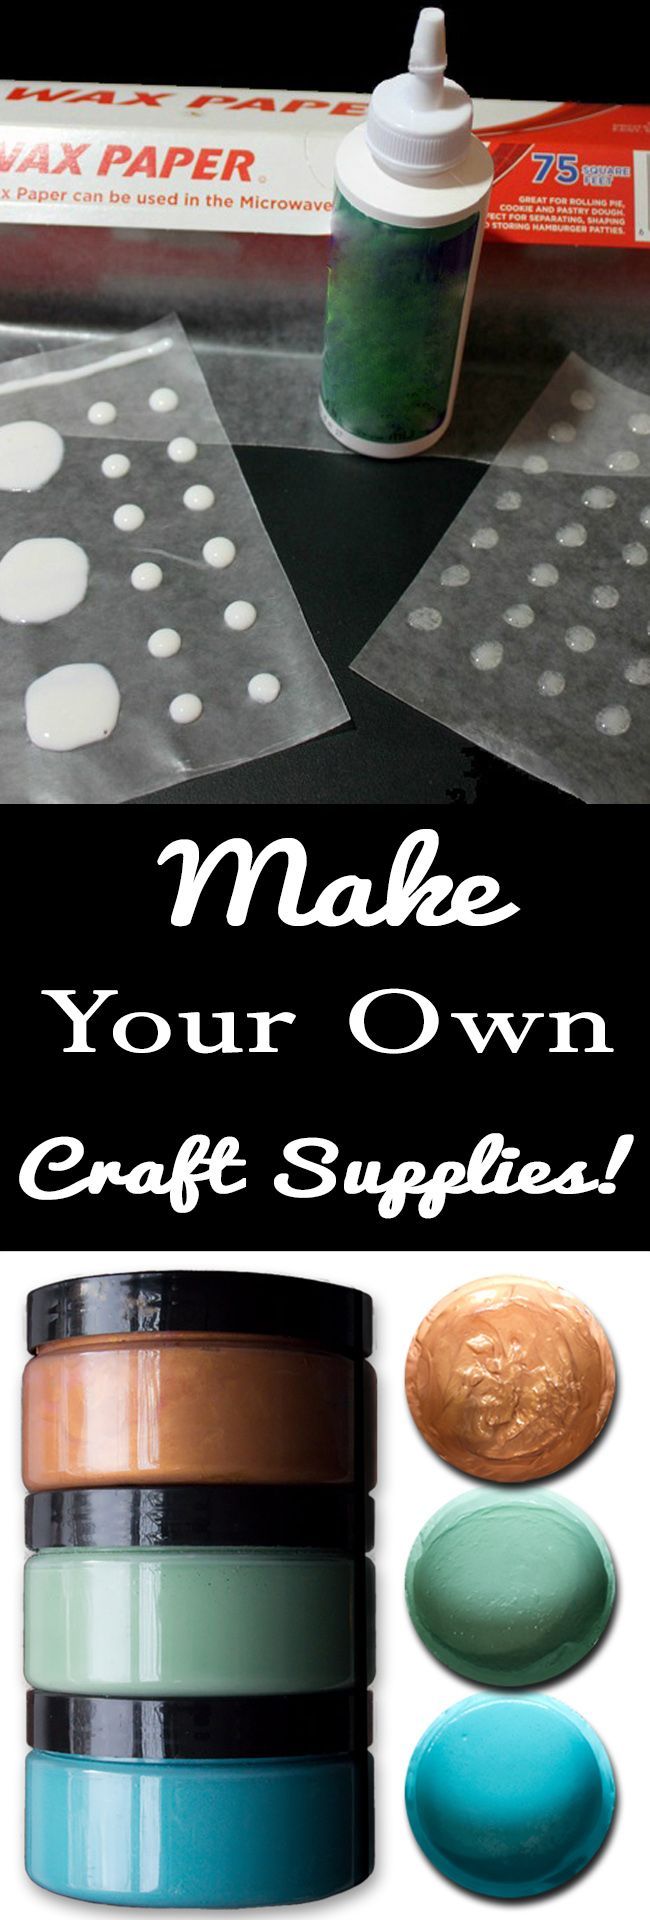 24 homemade crafts supplies
 ideas